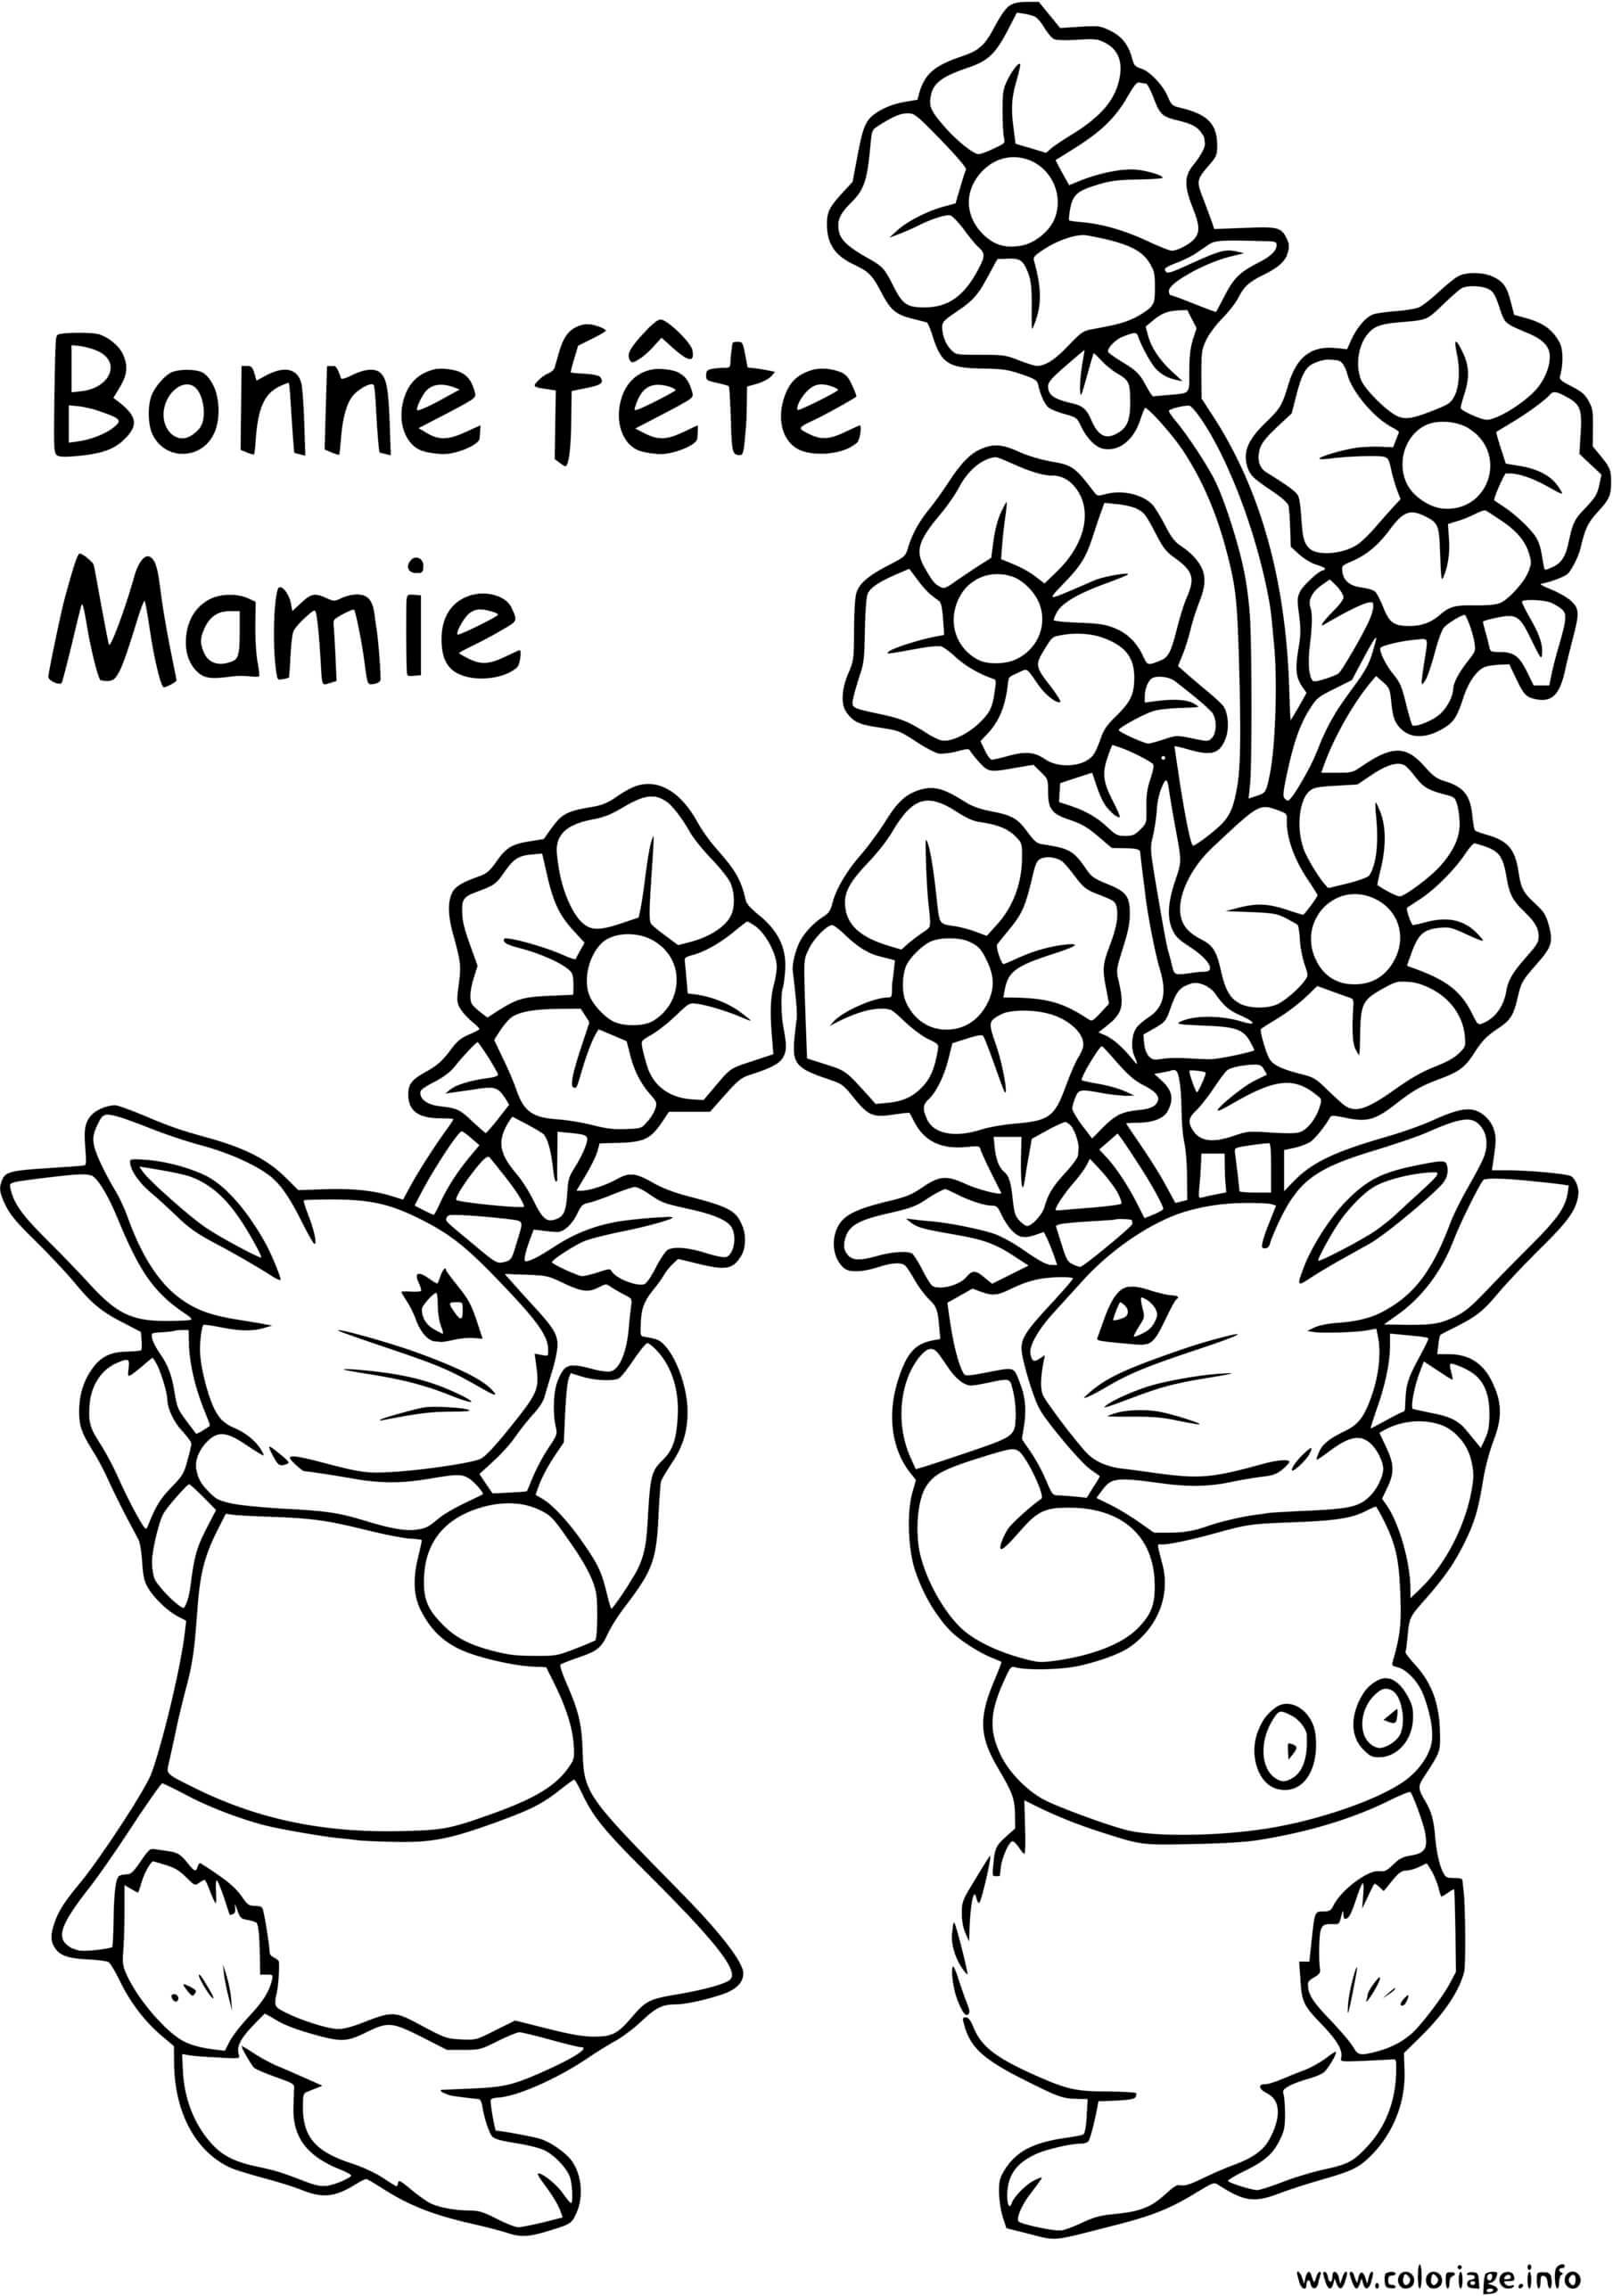   Deux lapins tenant un bouquet de fleurs 